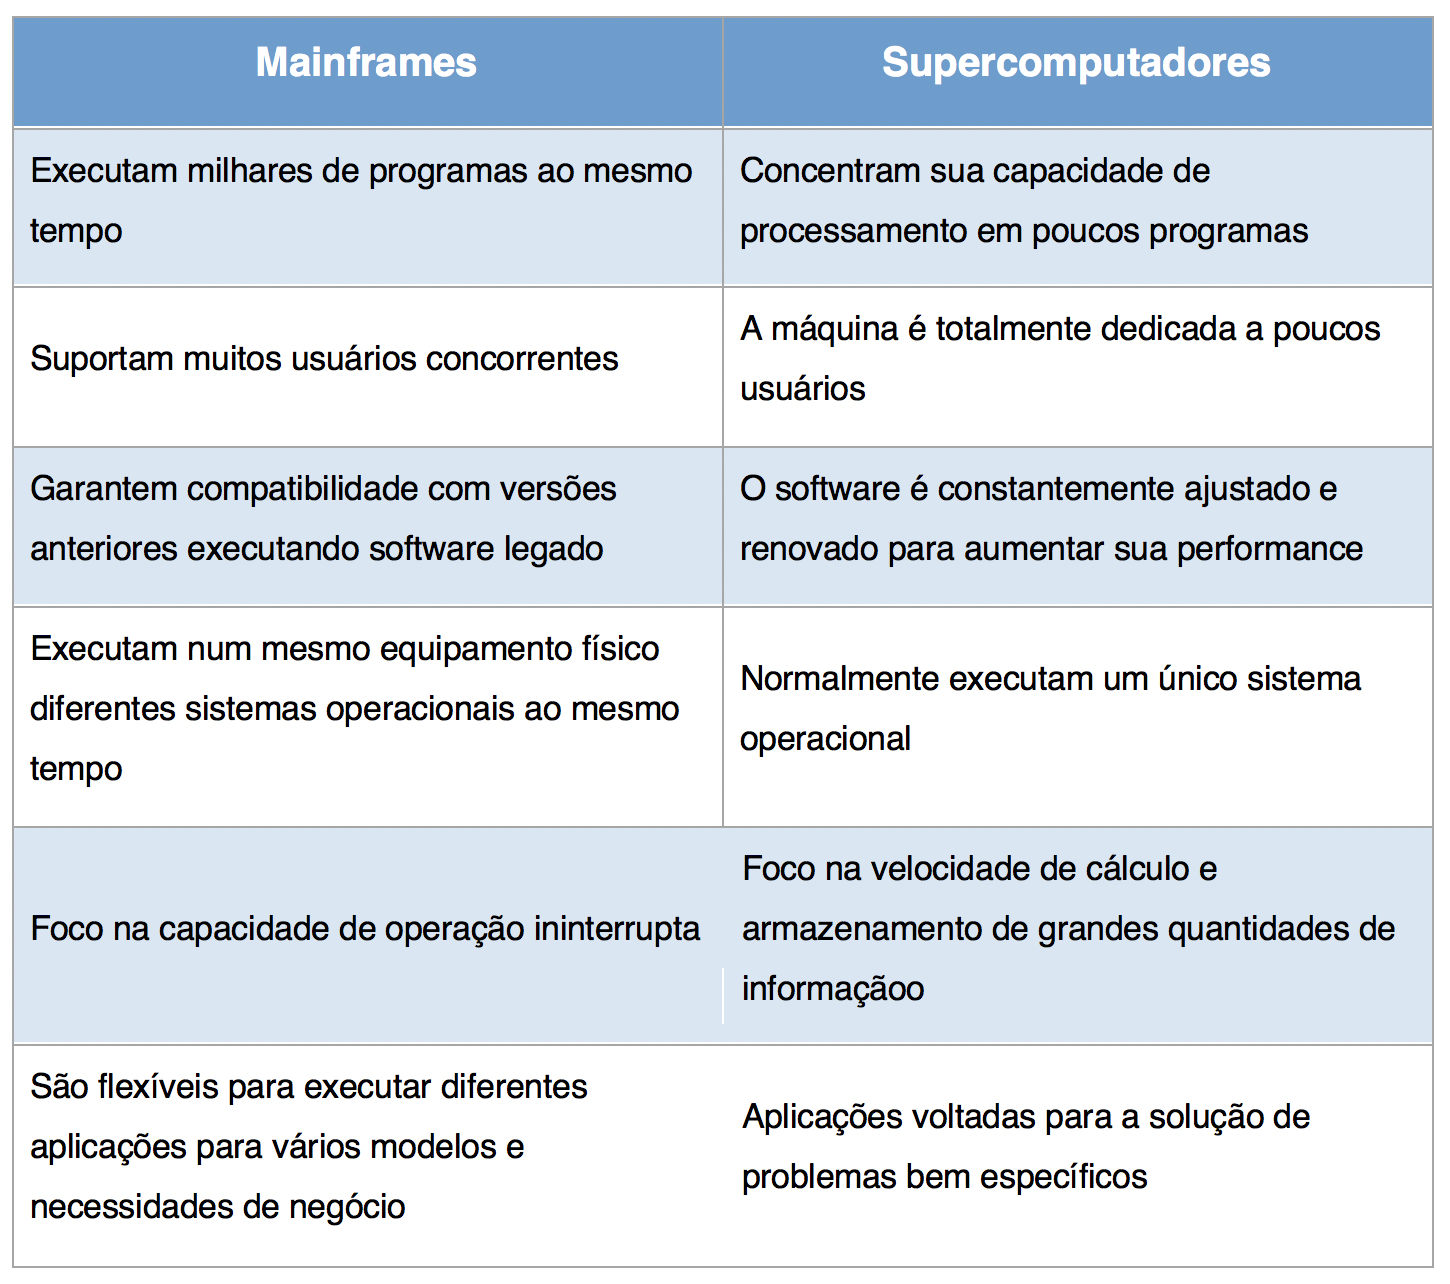 Comparação entre mainframes e supercomputadores